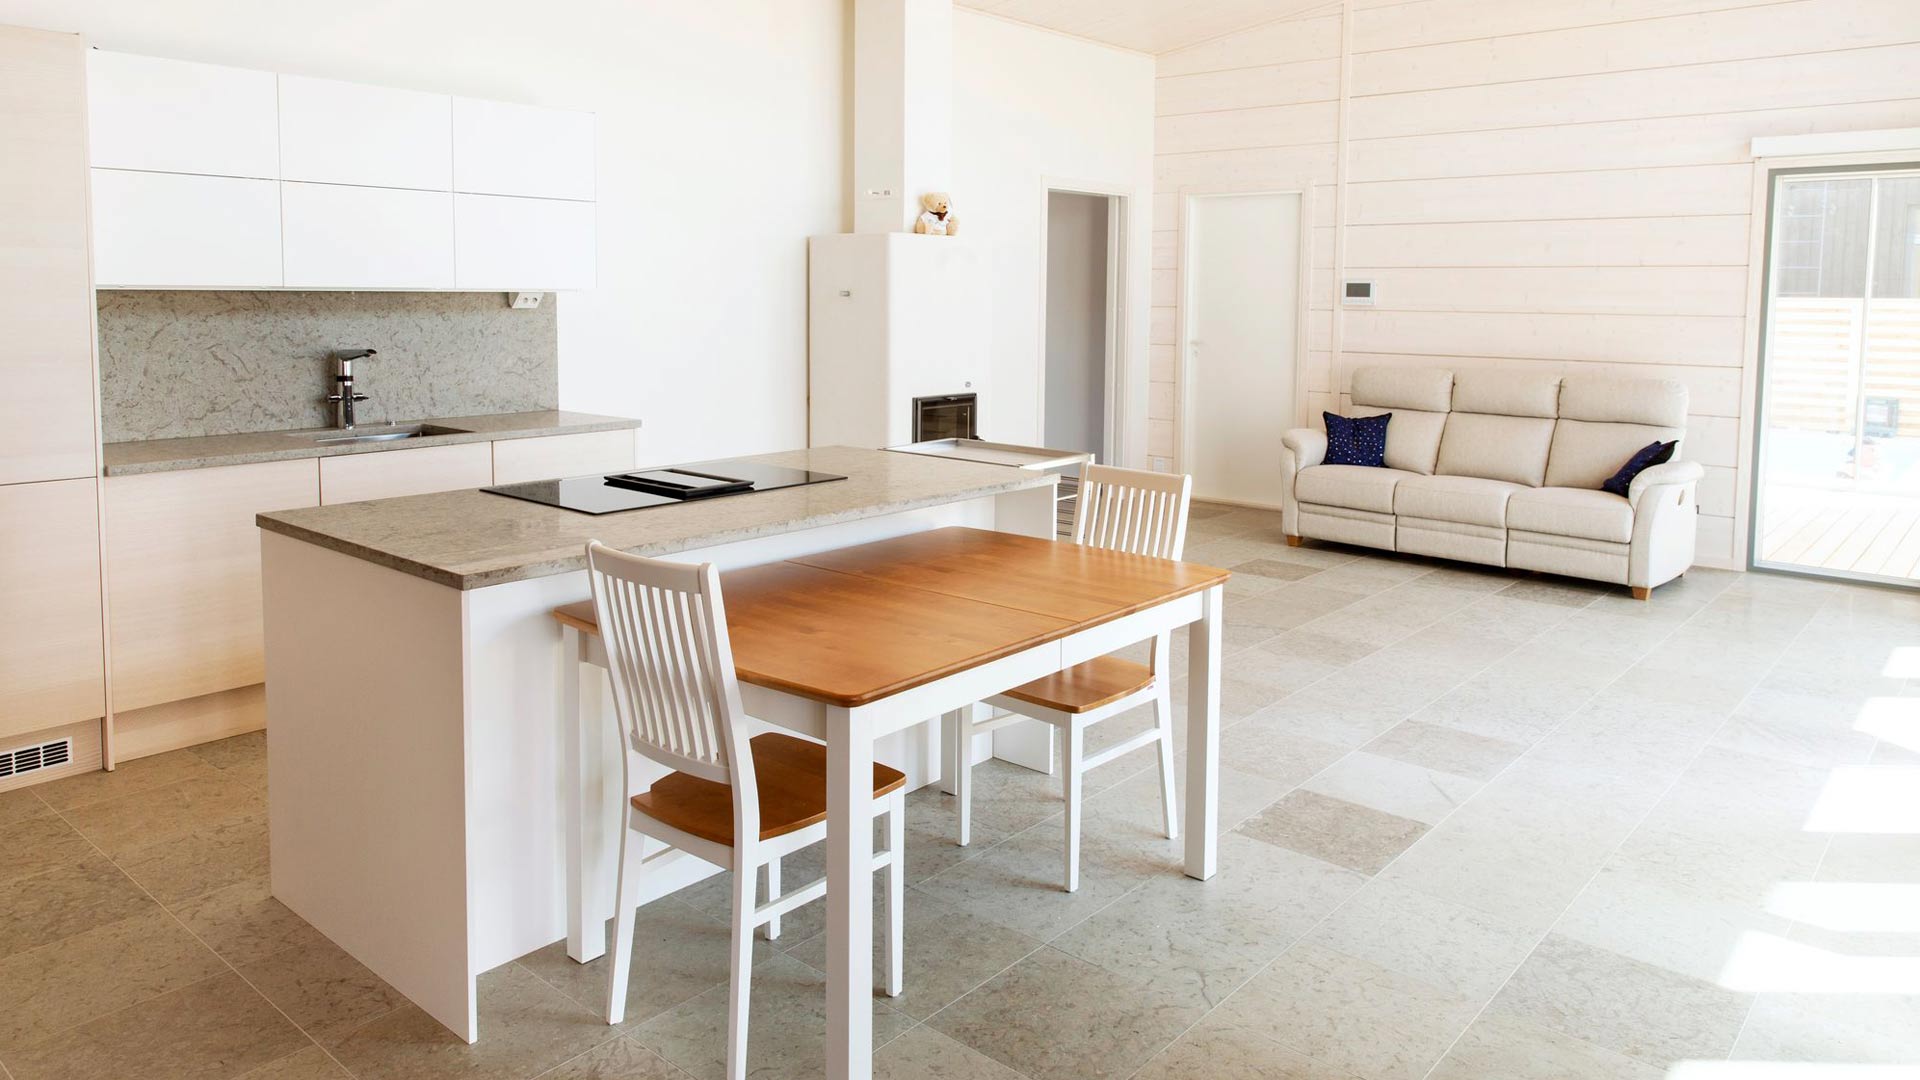 Keittiö ja olohuone ovat samassa tilassa, mikä tekee kodista helppokulkuisen. Integroitujen kodinlaitteiden käyttö jännitti Briittaa etukäteen. 